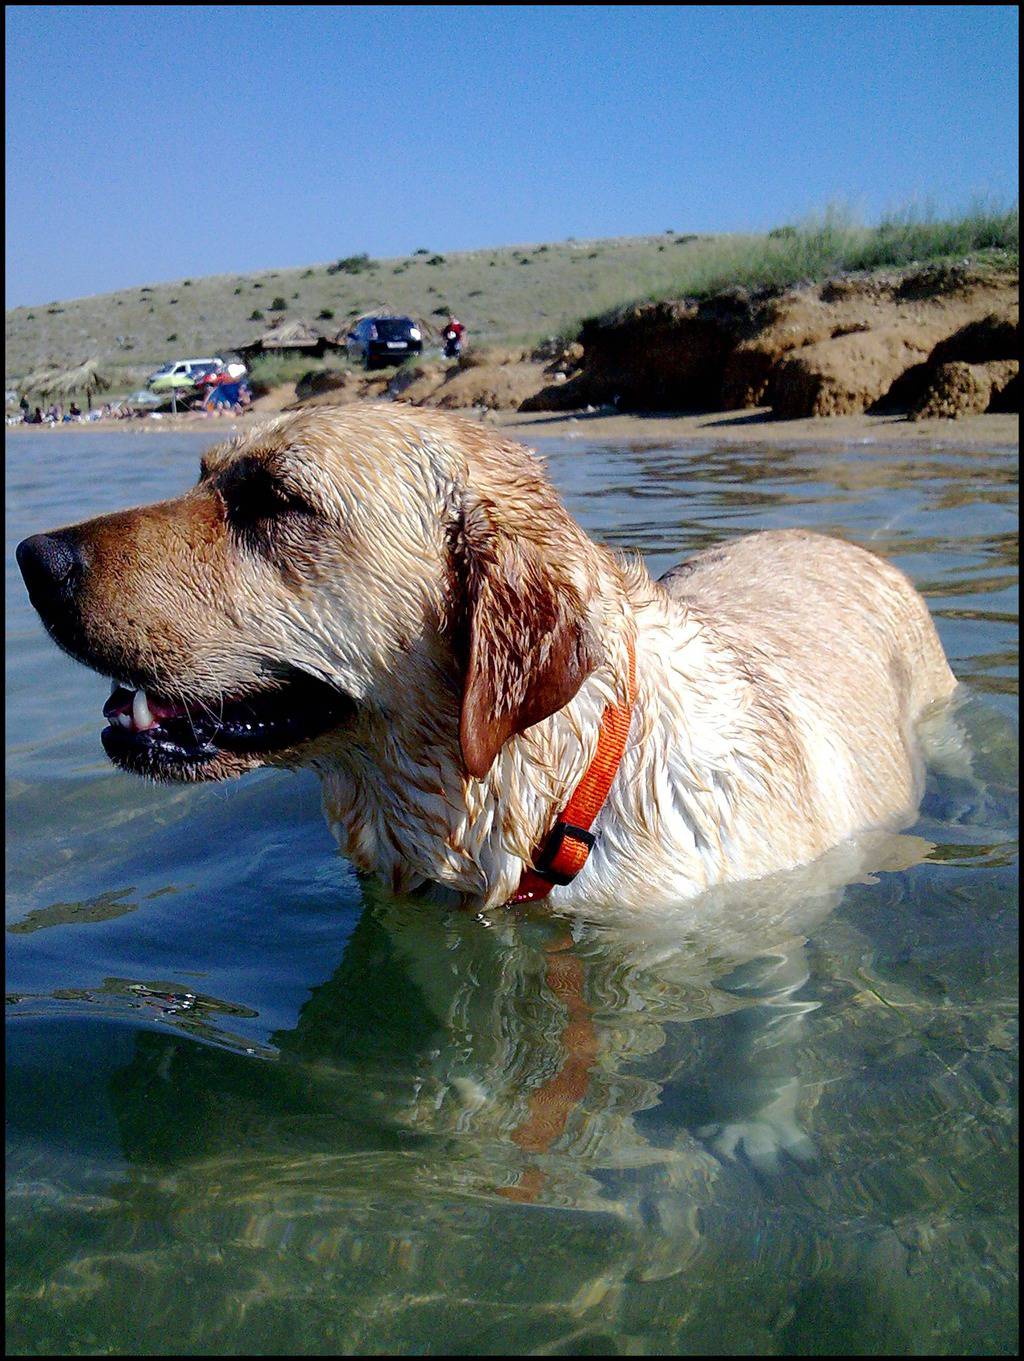 Plaže za pse: Otkrijte gdje se sve psi mogu bezbrižno kupati  